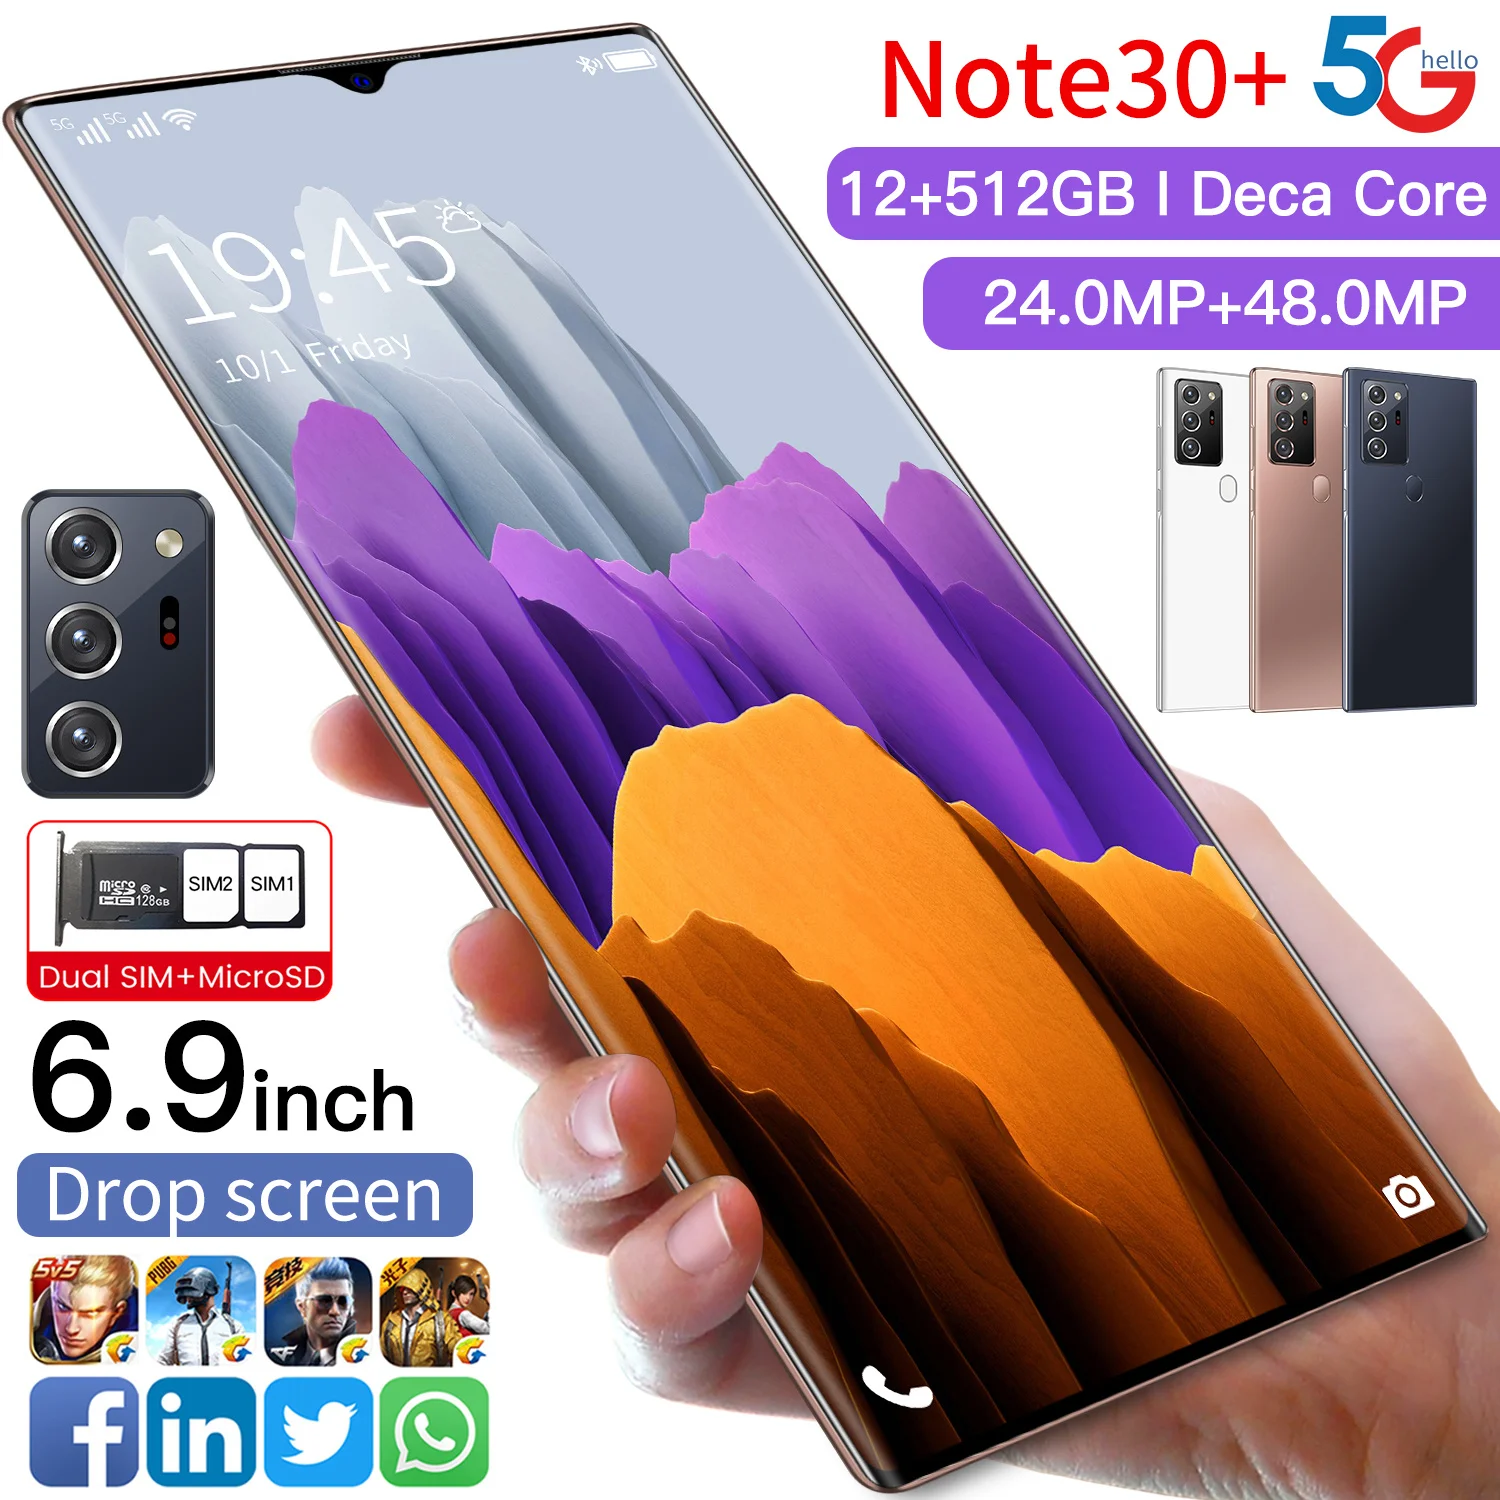 Note 30+ mobile phones | 2mrk Sale Online